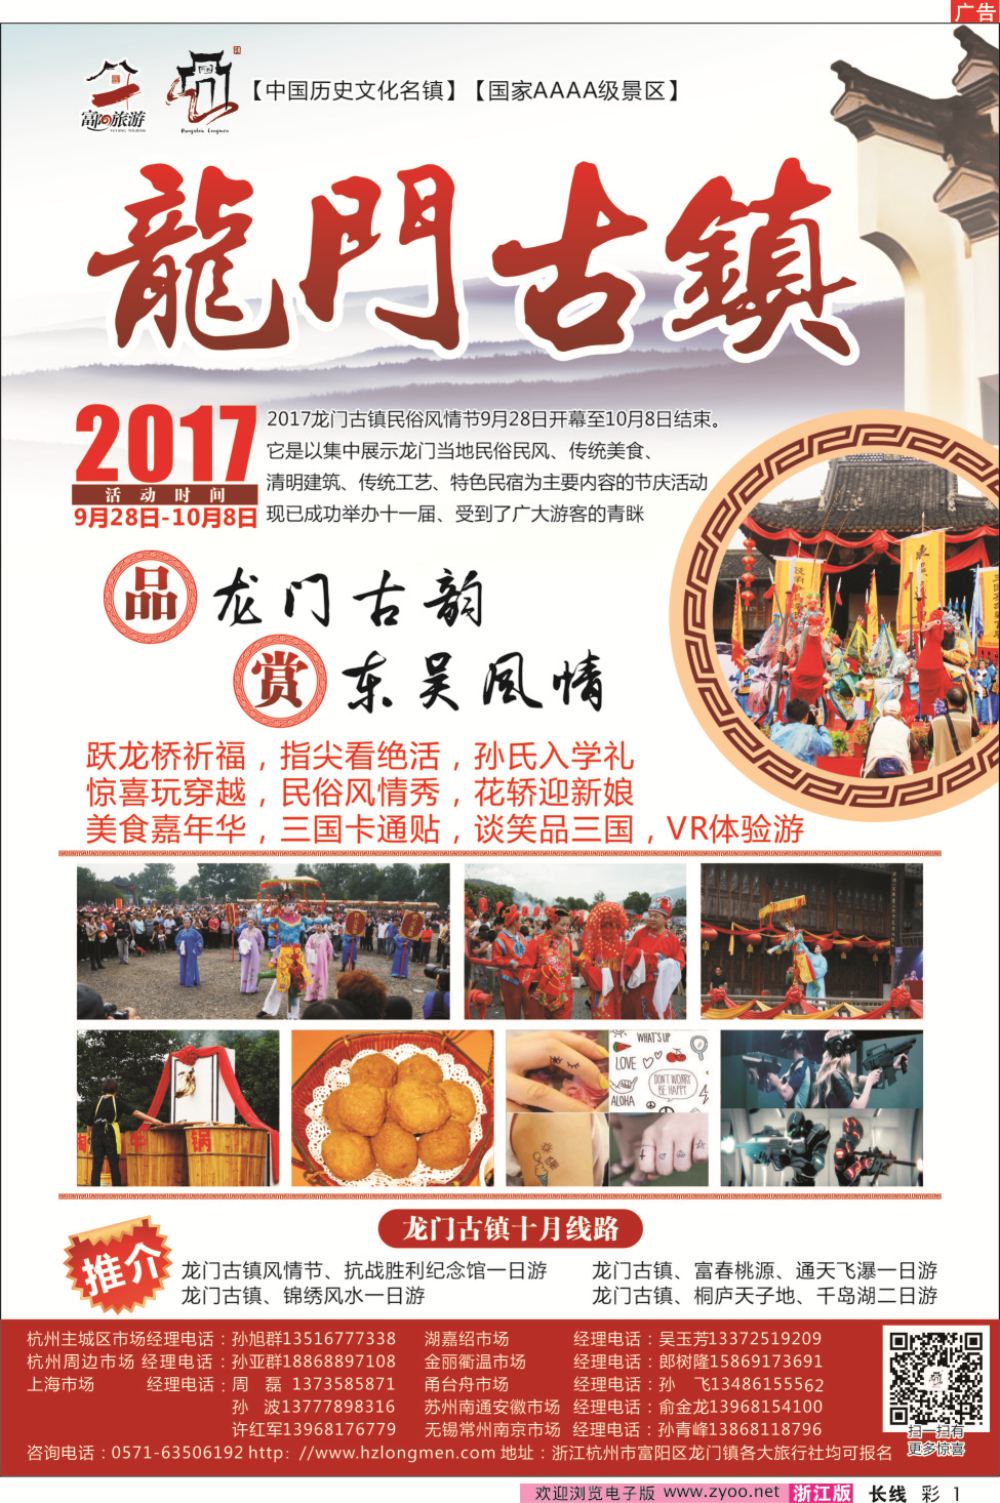 彩12017龙门古镇民俗风情节9月28日开幕